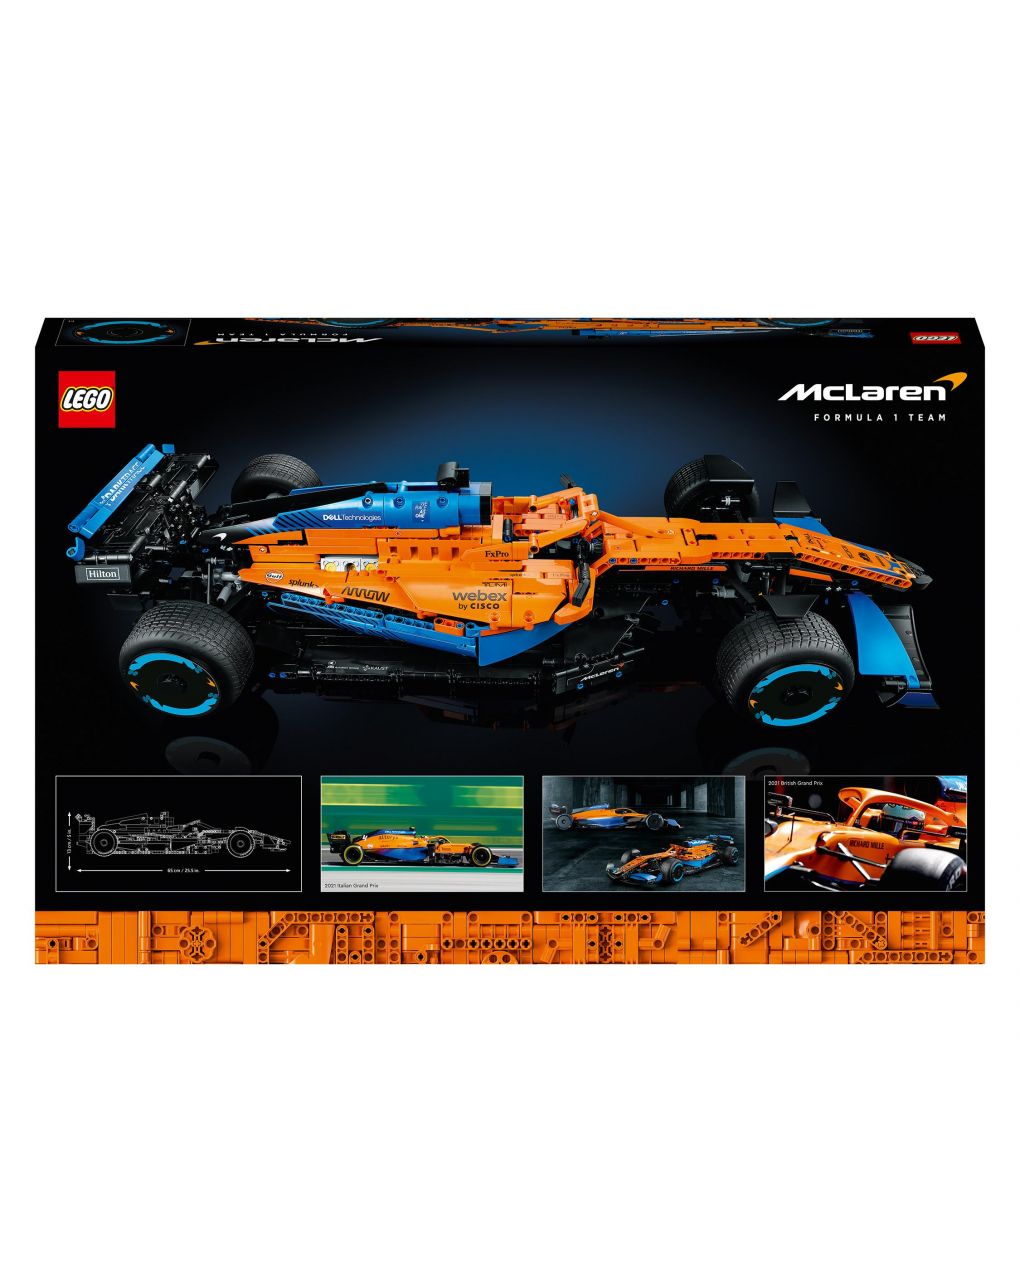 Fórmula mclaren 1™ single-seater 42141 - técnica lego - LEGO